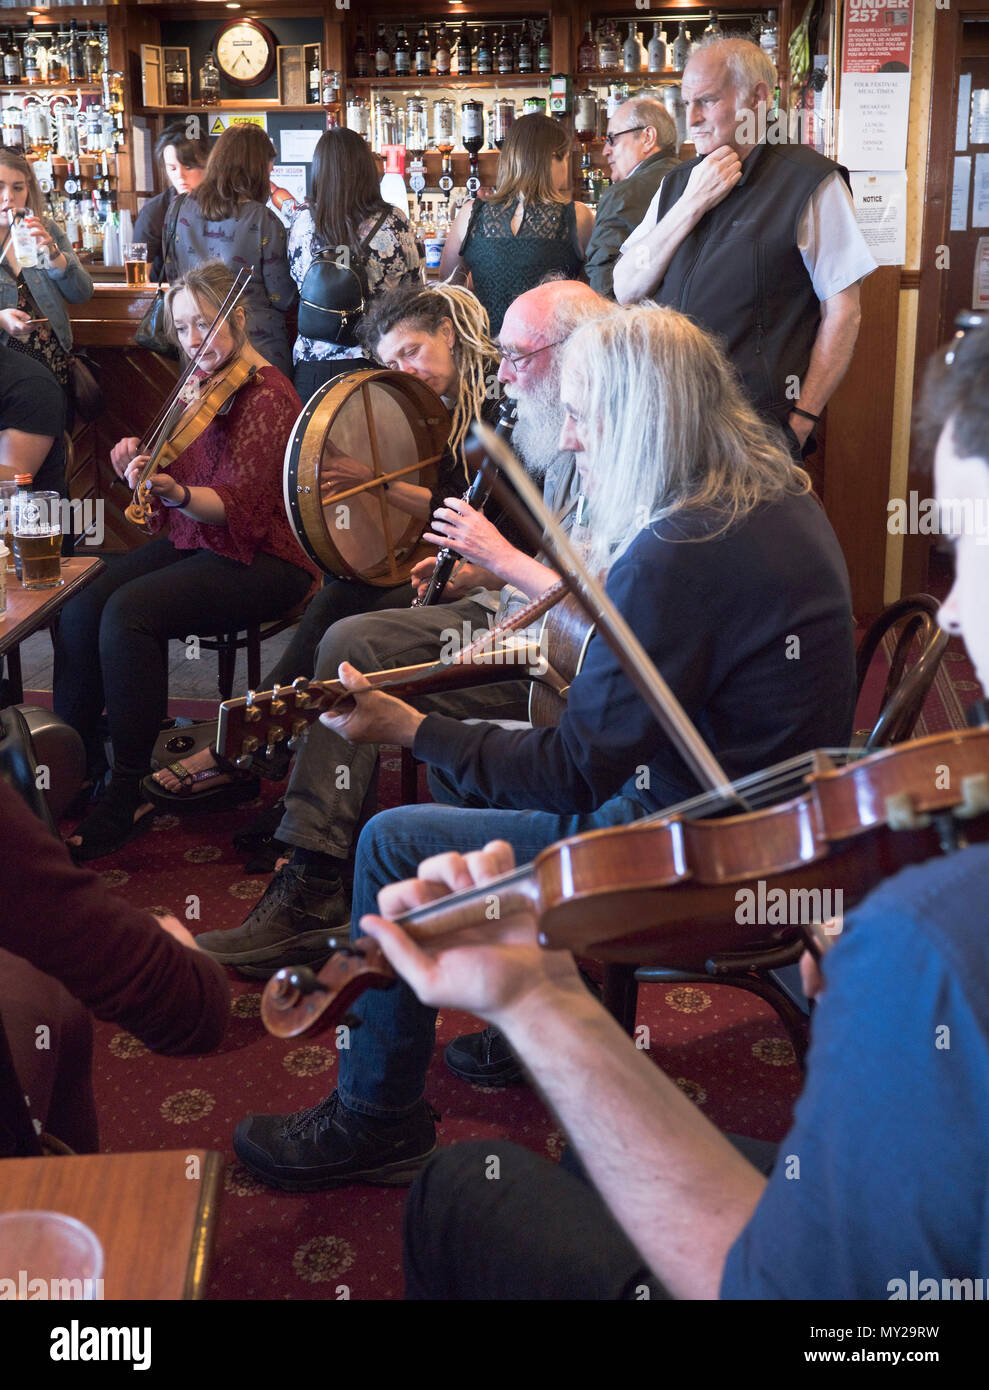 dh Stromness Folk Festival STROMNESS ORKNEY Músicos folclóricos tocando instrumentos en el pub Scotland fiddle player music instrument festivales del reino unido Foto de stock